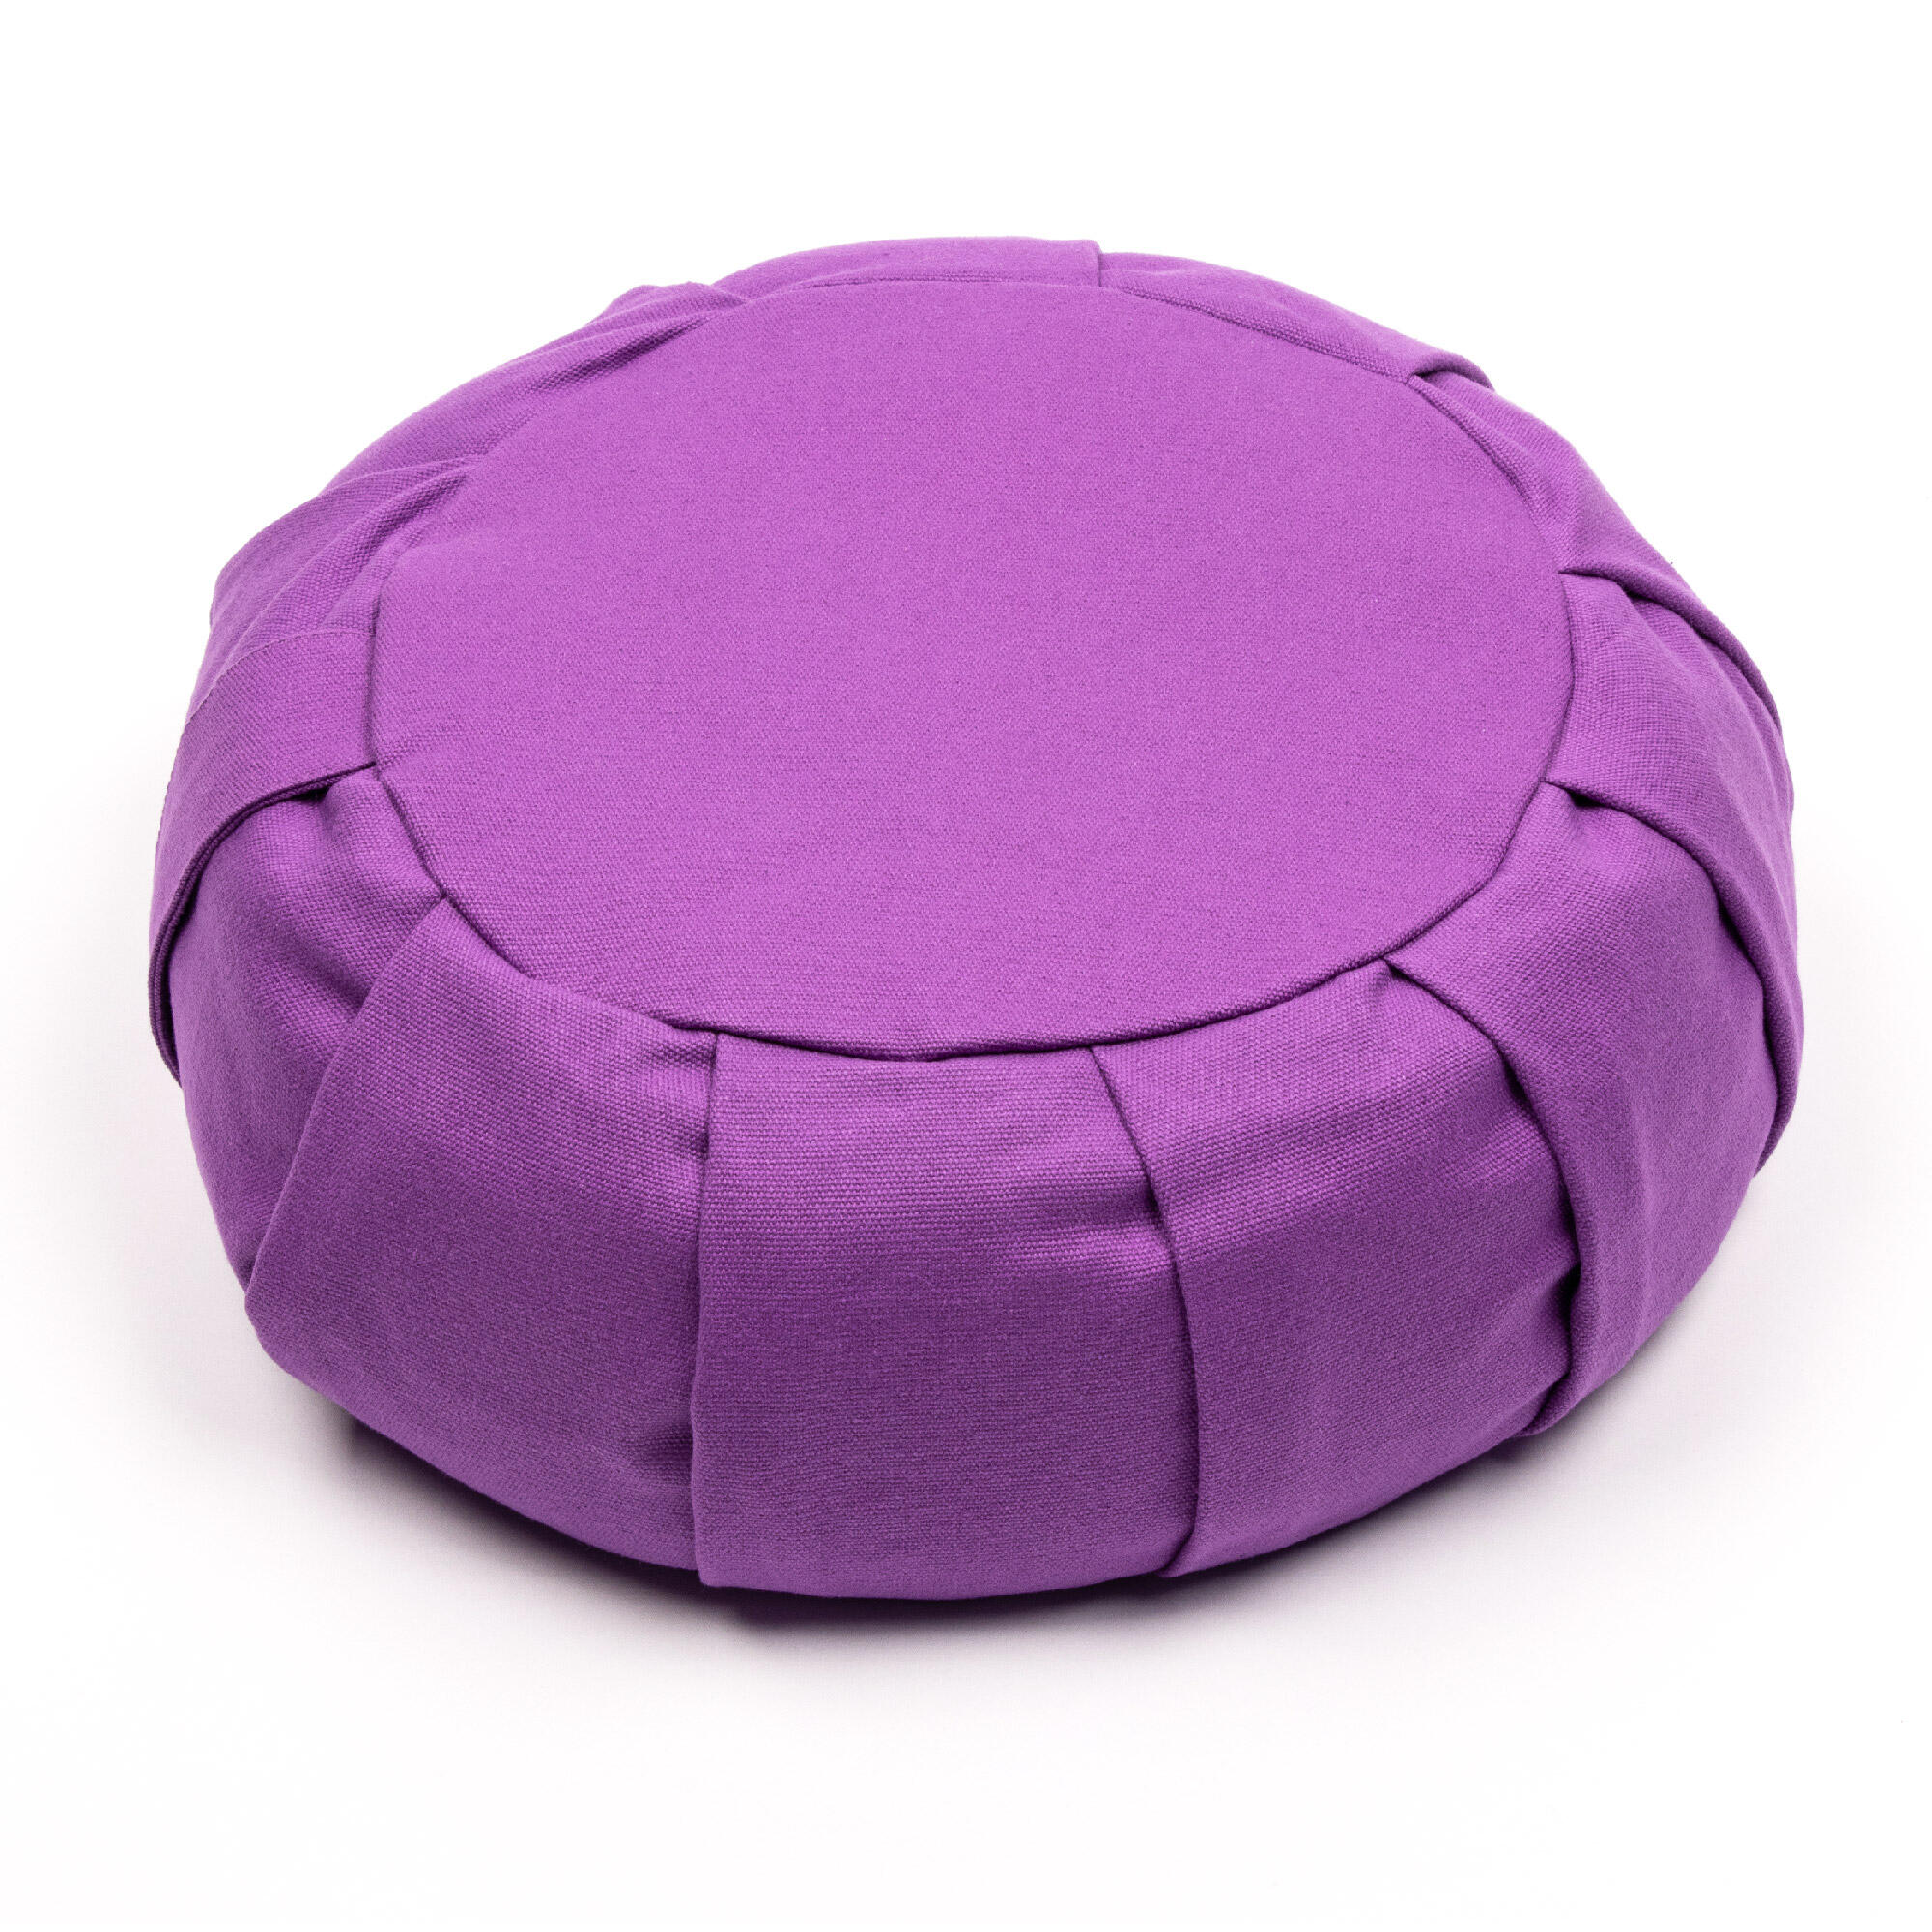 Myga Zafu Meditation Cushion - Plum 1/8